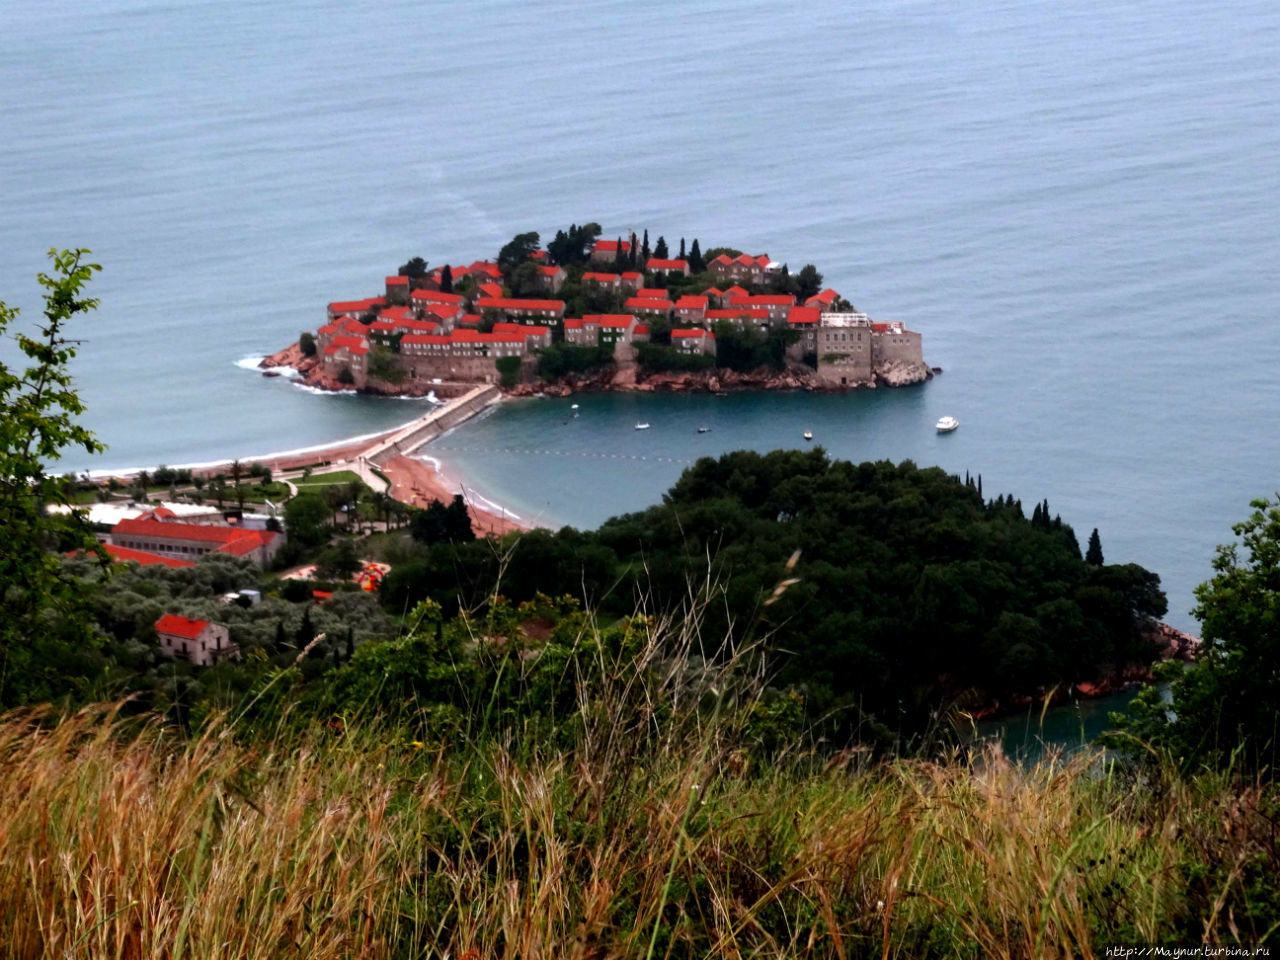 Островок  Свети  Стефана  несколько дней будет сопровождать нас,  медленно  уменьшаясь в размерах. Будва, Черногория